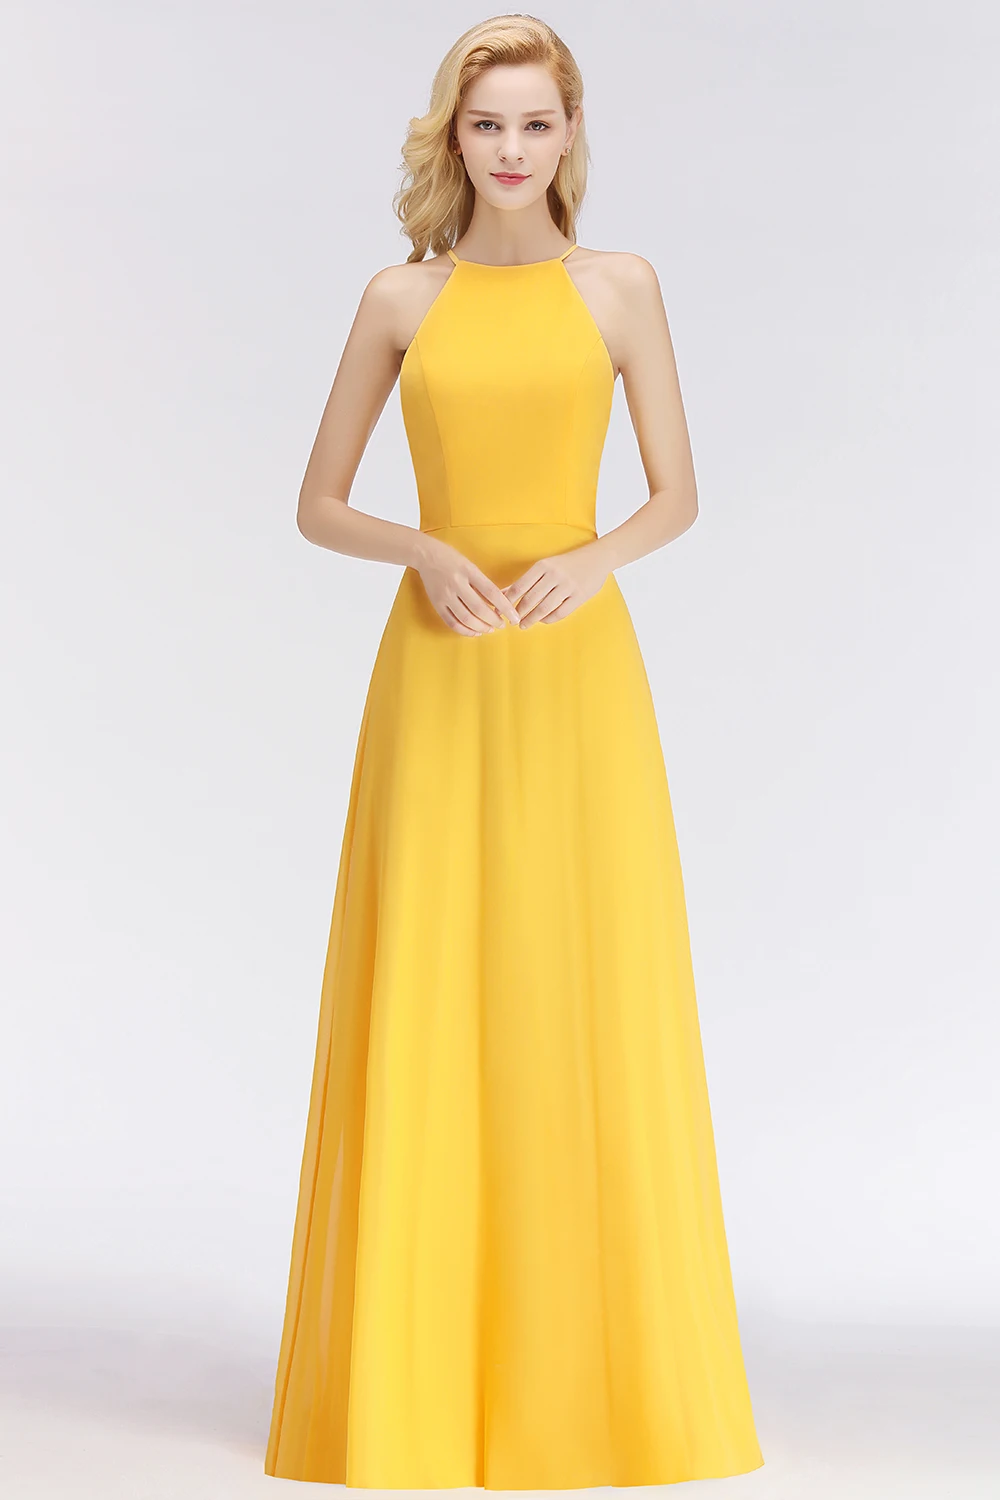 Vestido de Festa элегантное желтое шифоновое длинное вечернее платье очаровательный вечер шеф-повара вечерние платья длинное вечернее платье